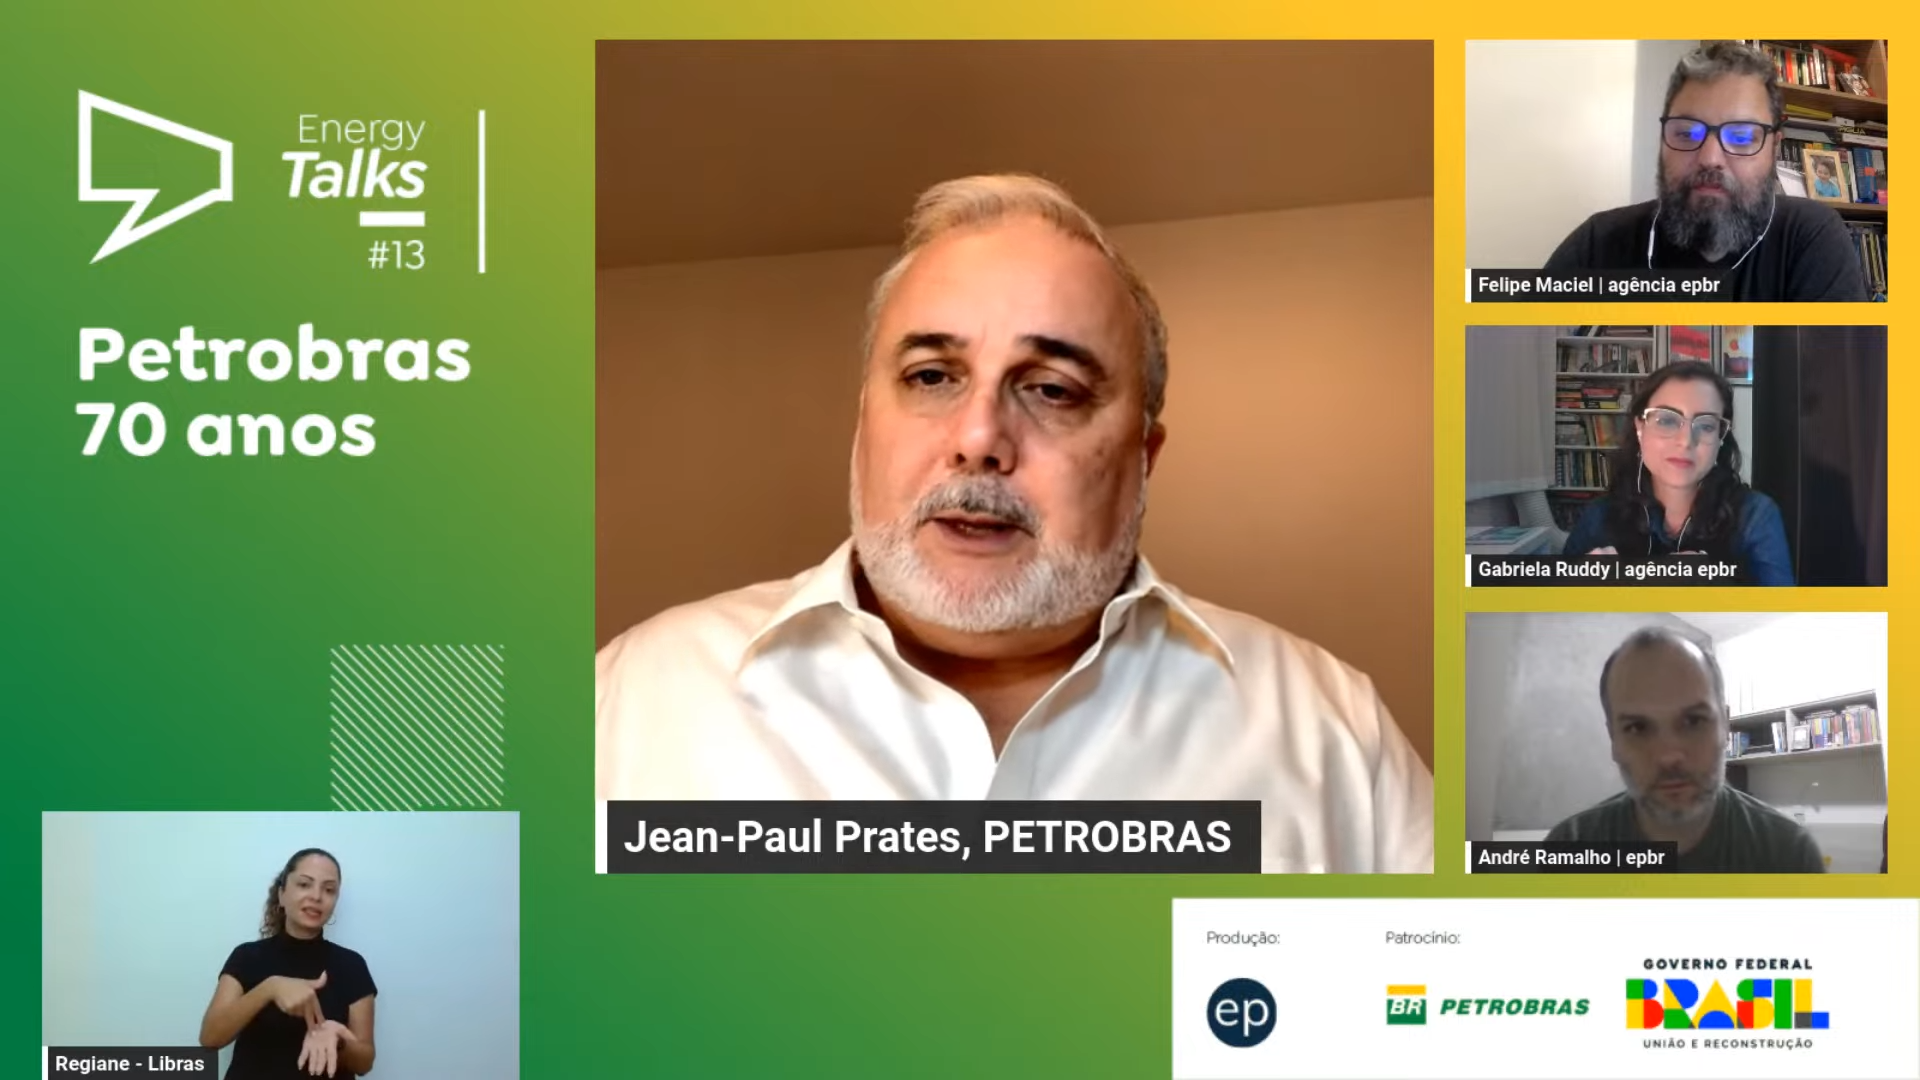 Vamos colocar a Venezuela no mapa do petróleo de novo, diz presidente da Petrobras. Na imagem: Captura de tela da participação de Jean Paul Prates, CEO da Petrobras, no Energy Talks #13, evento virtual da agência epbr, em 19/10/23. Na pauta: "Petrobras 70 anos"